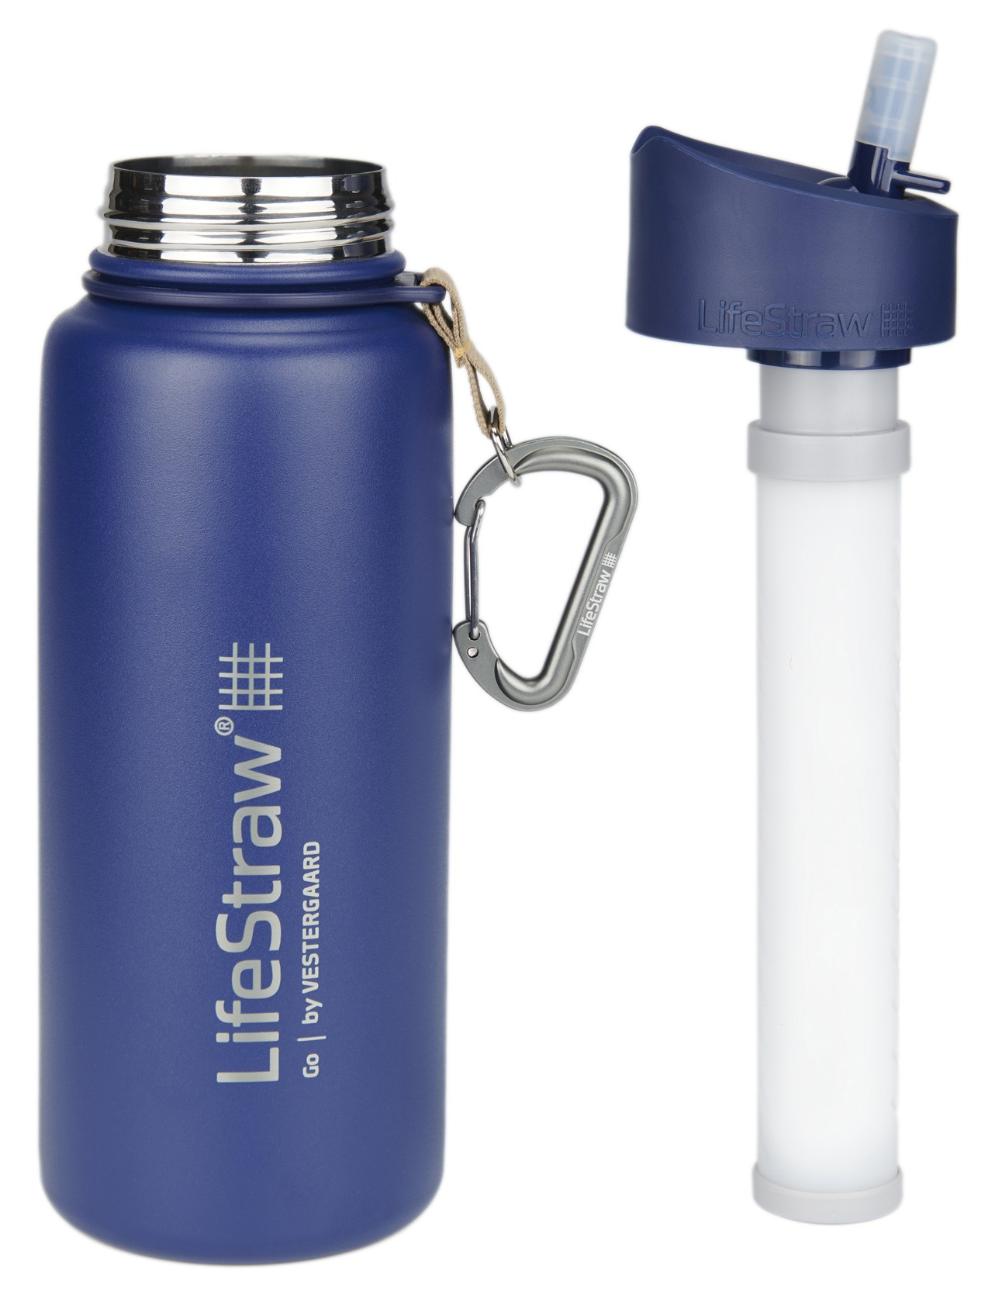 Вакуумная бутылка из нержавеющей стали с фильтром Go - 24 эт. унция $ 12.99 LifeStraw